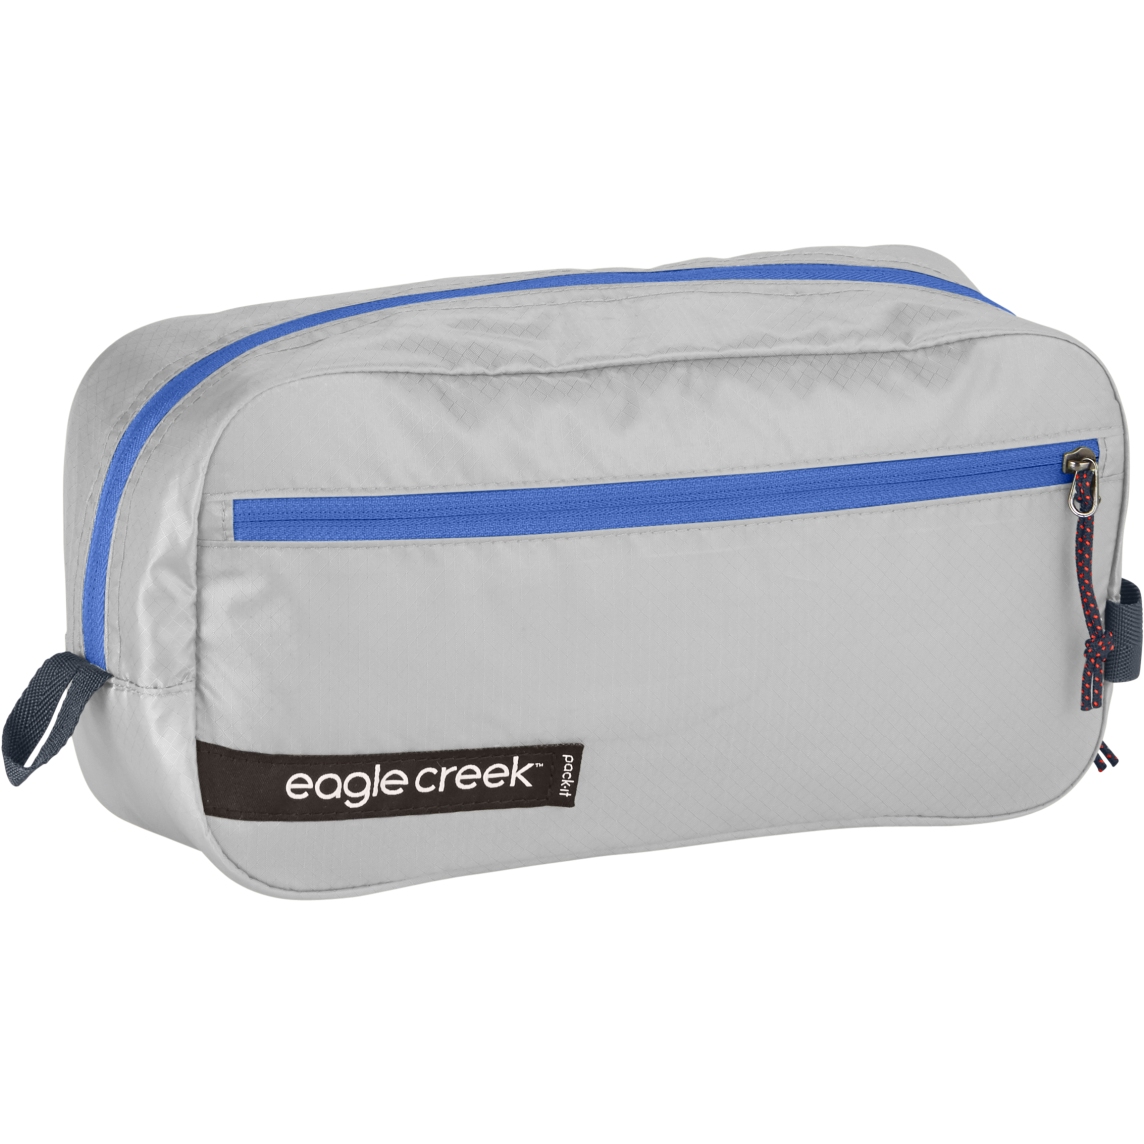 Produktbild von Eagle Creek Pack-It Isolate Quick Trip S - Waschtasche - aizome blue grey